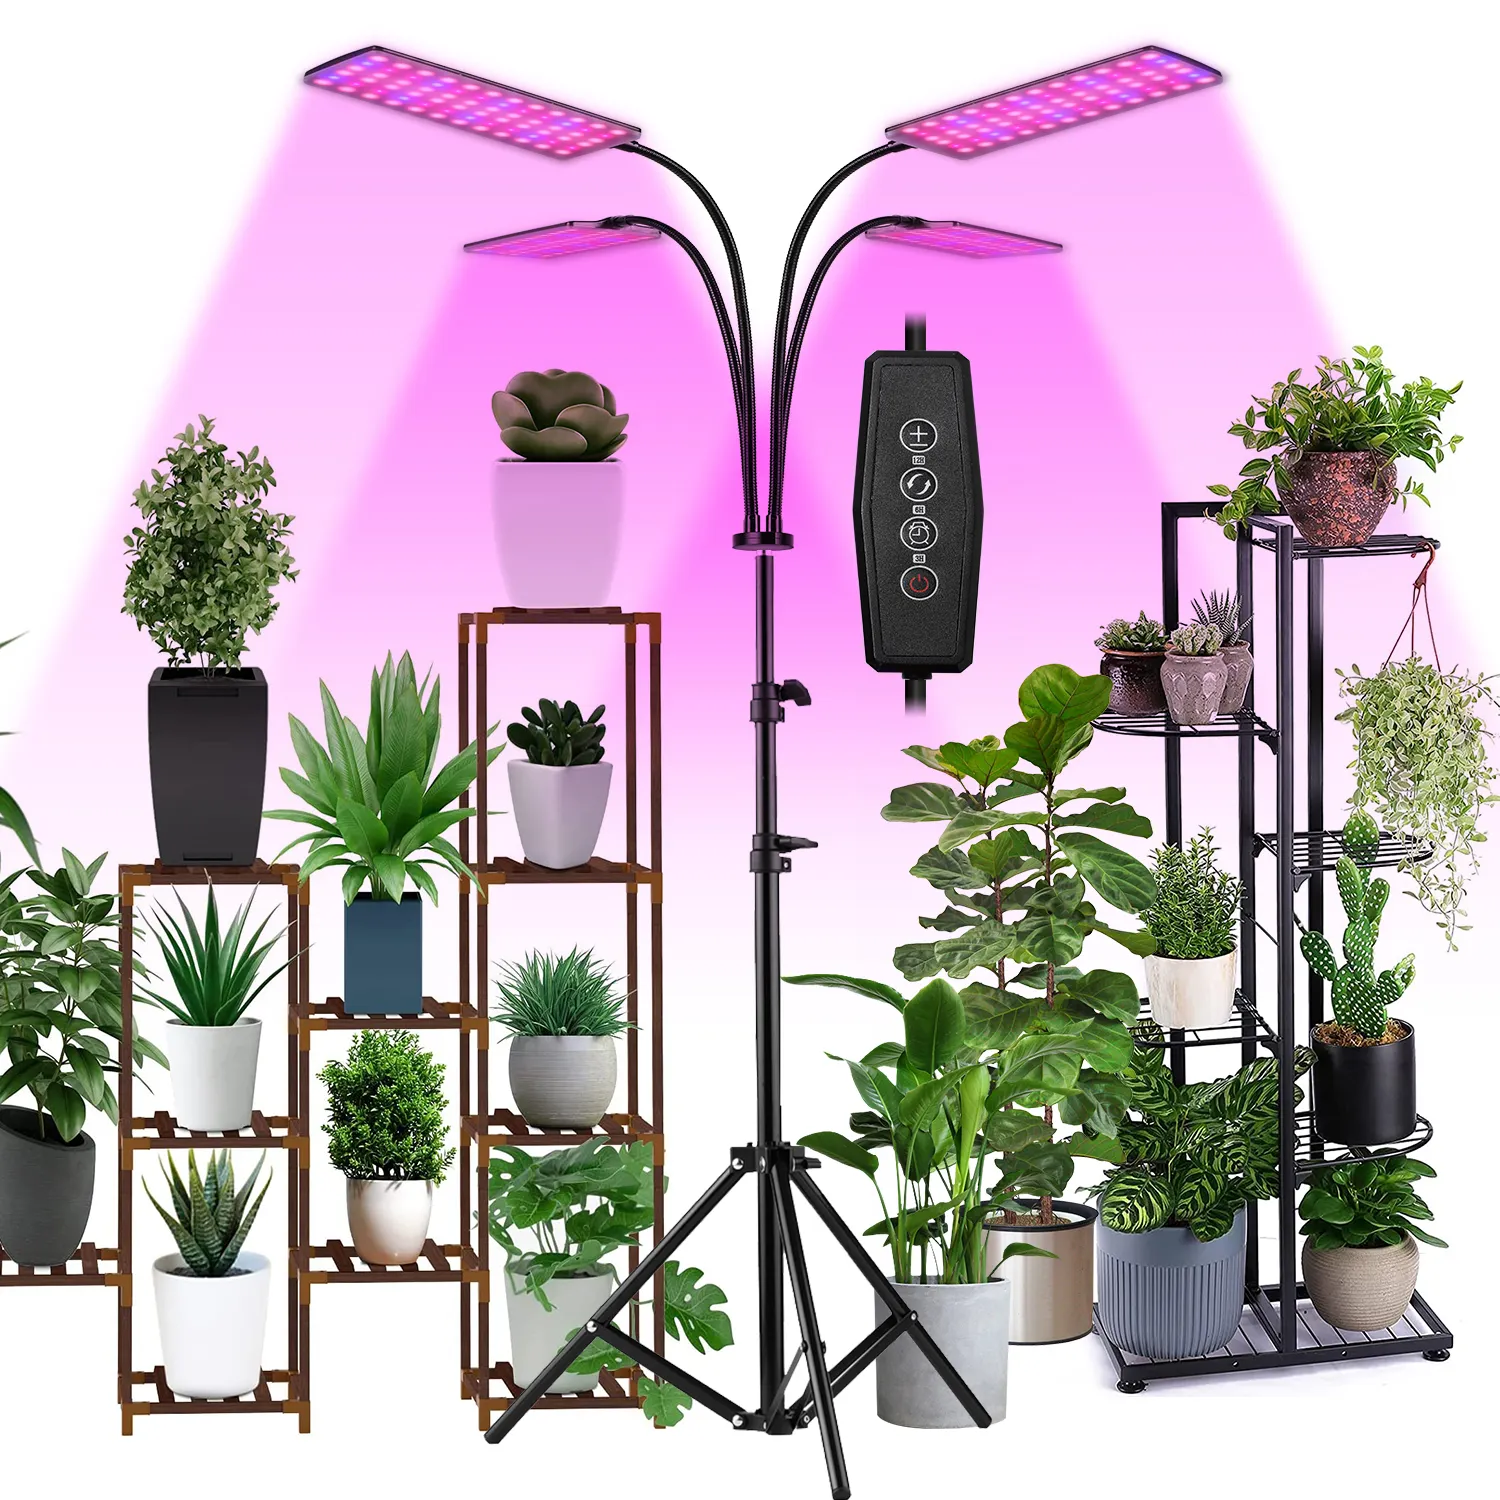 ETL-gelistete hochwertige LED Grow Light Voll spektrum mit Stativ ständer PhytoLamp für Zimmer pflanzen